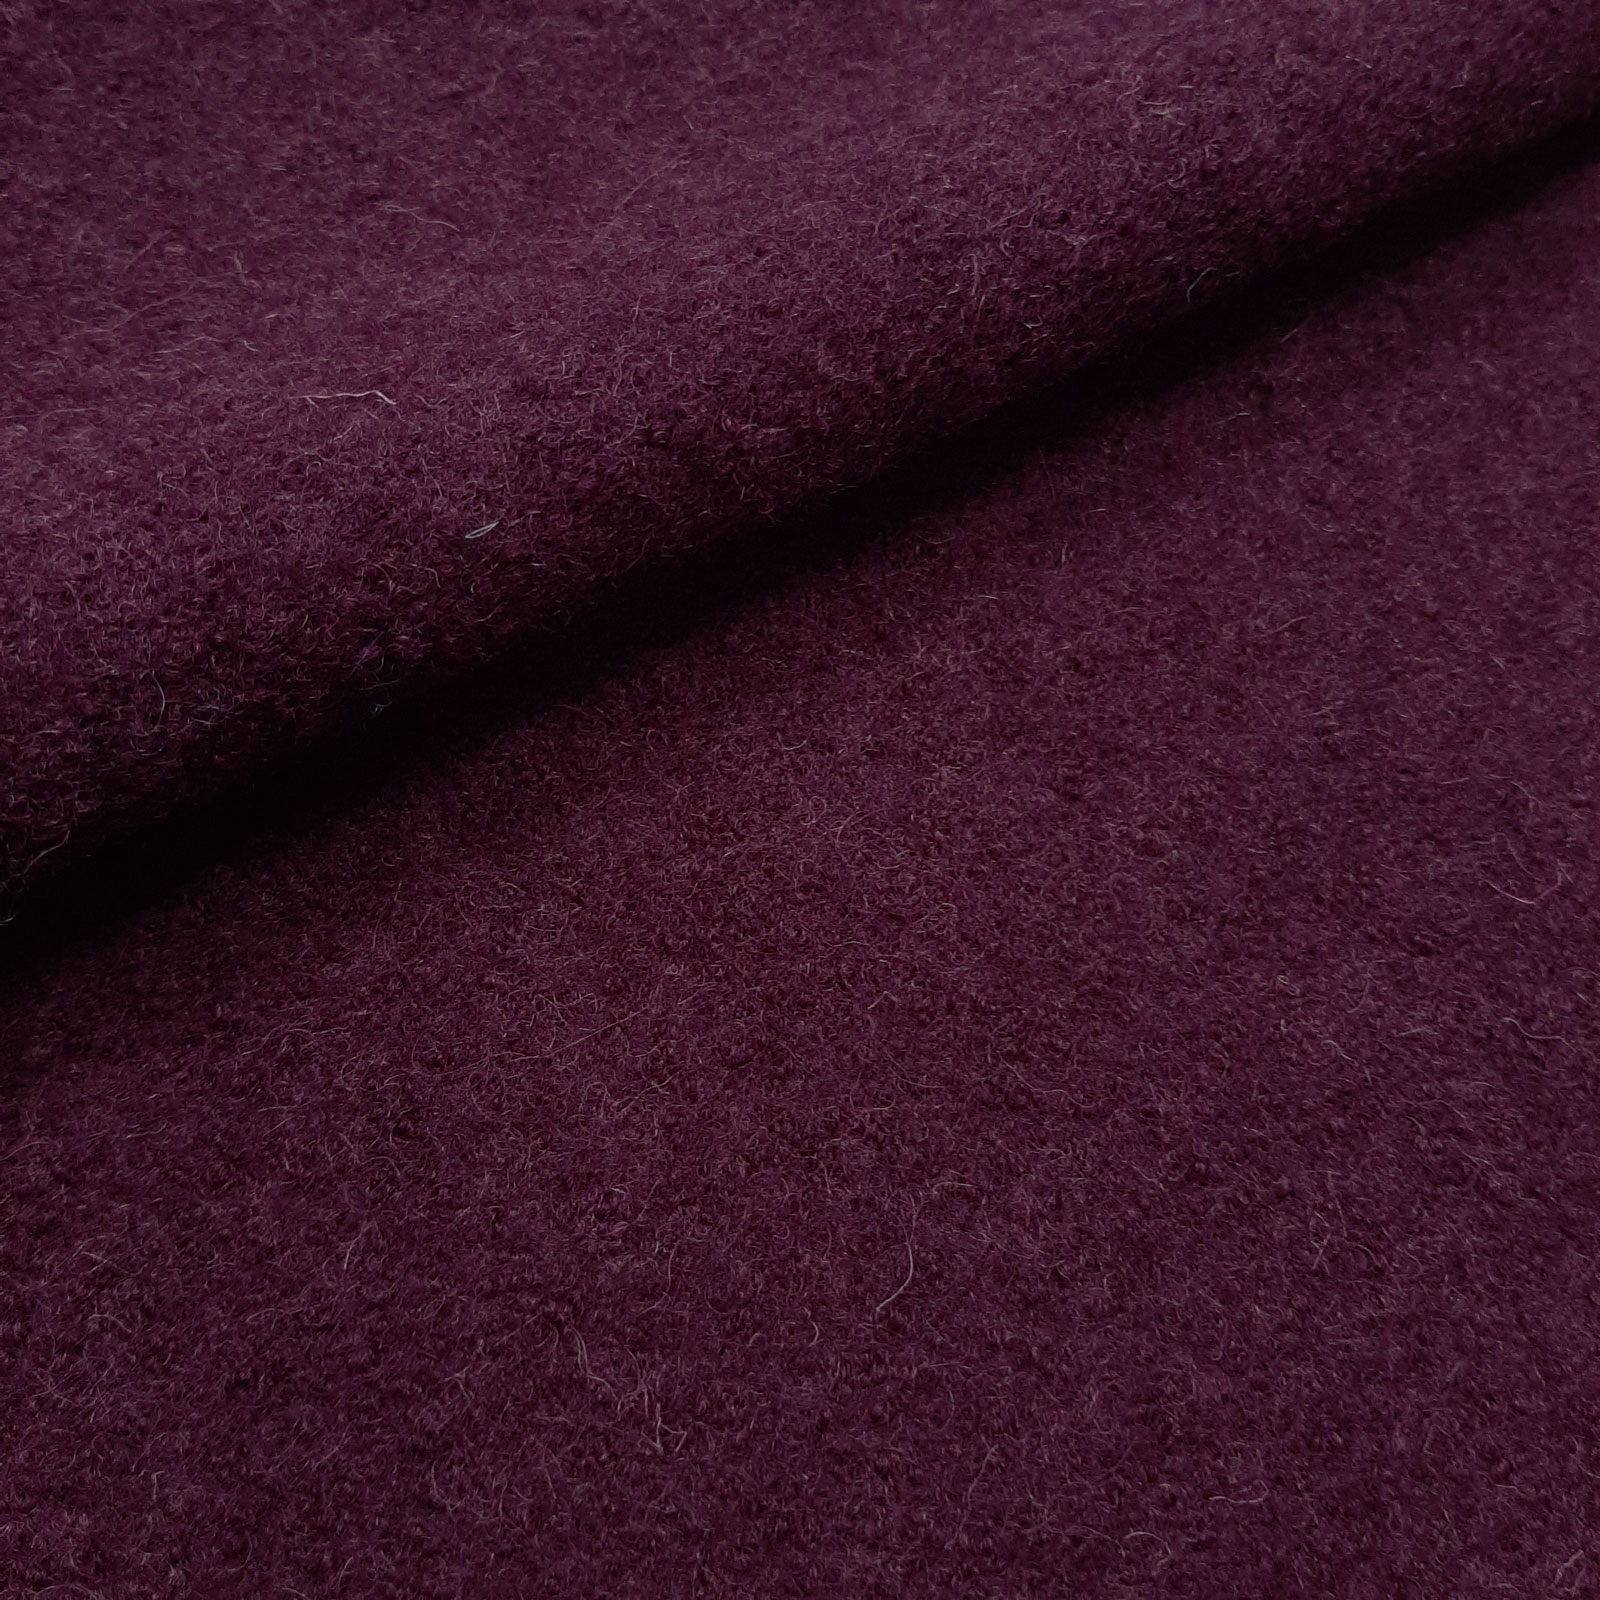 Fabian - Boiled Wool / Loden Fabric - 100% Virgin Wool -Berry